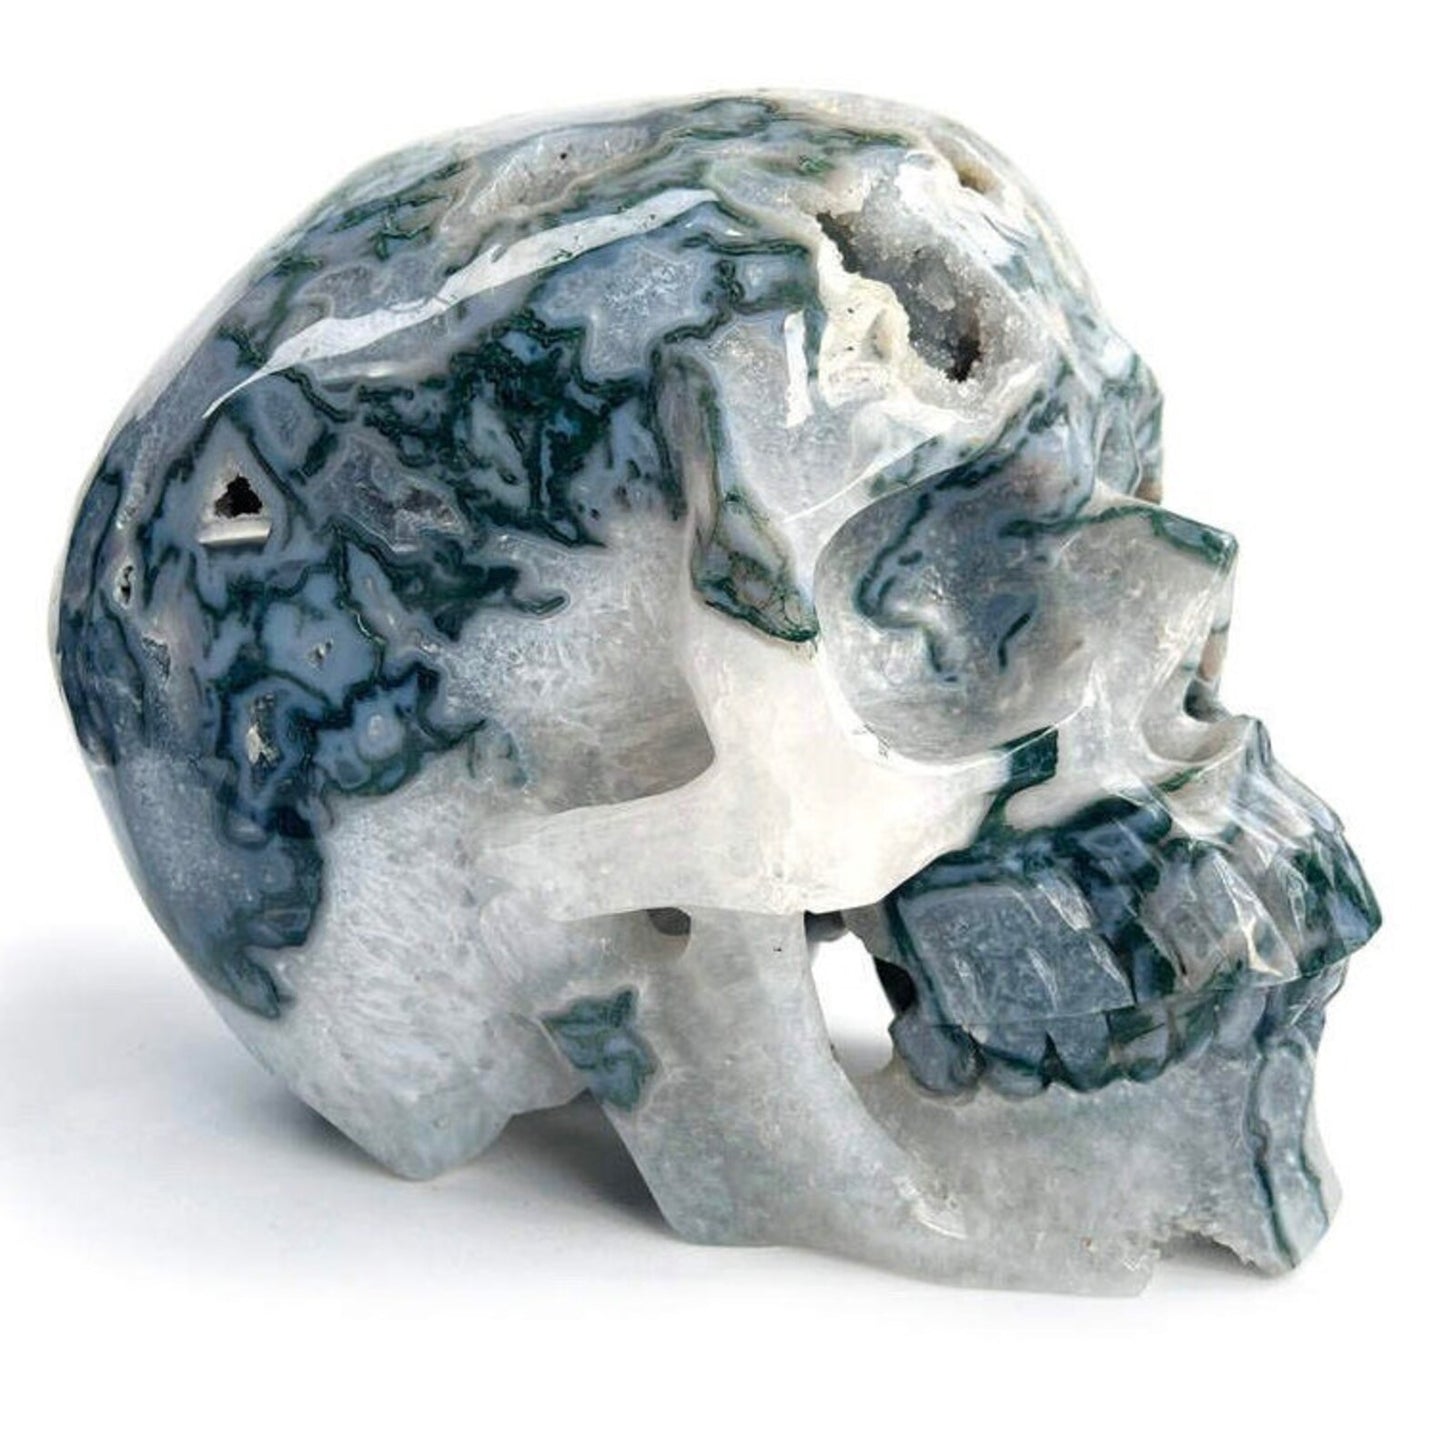 9 inch druzy moss agate Crystal skull